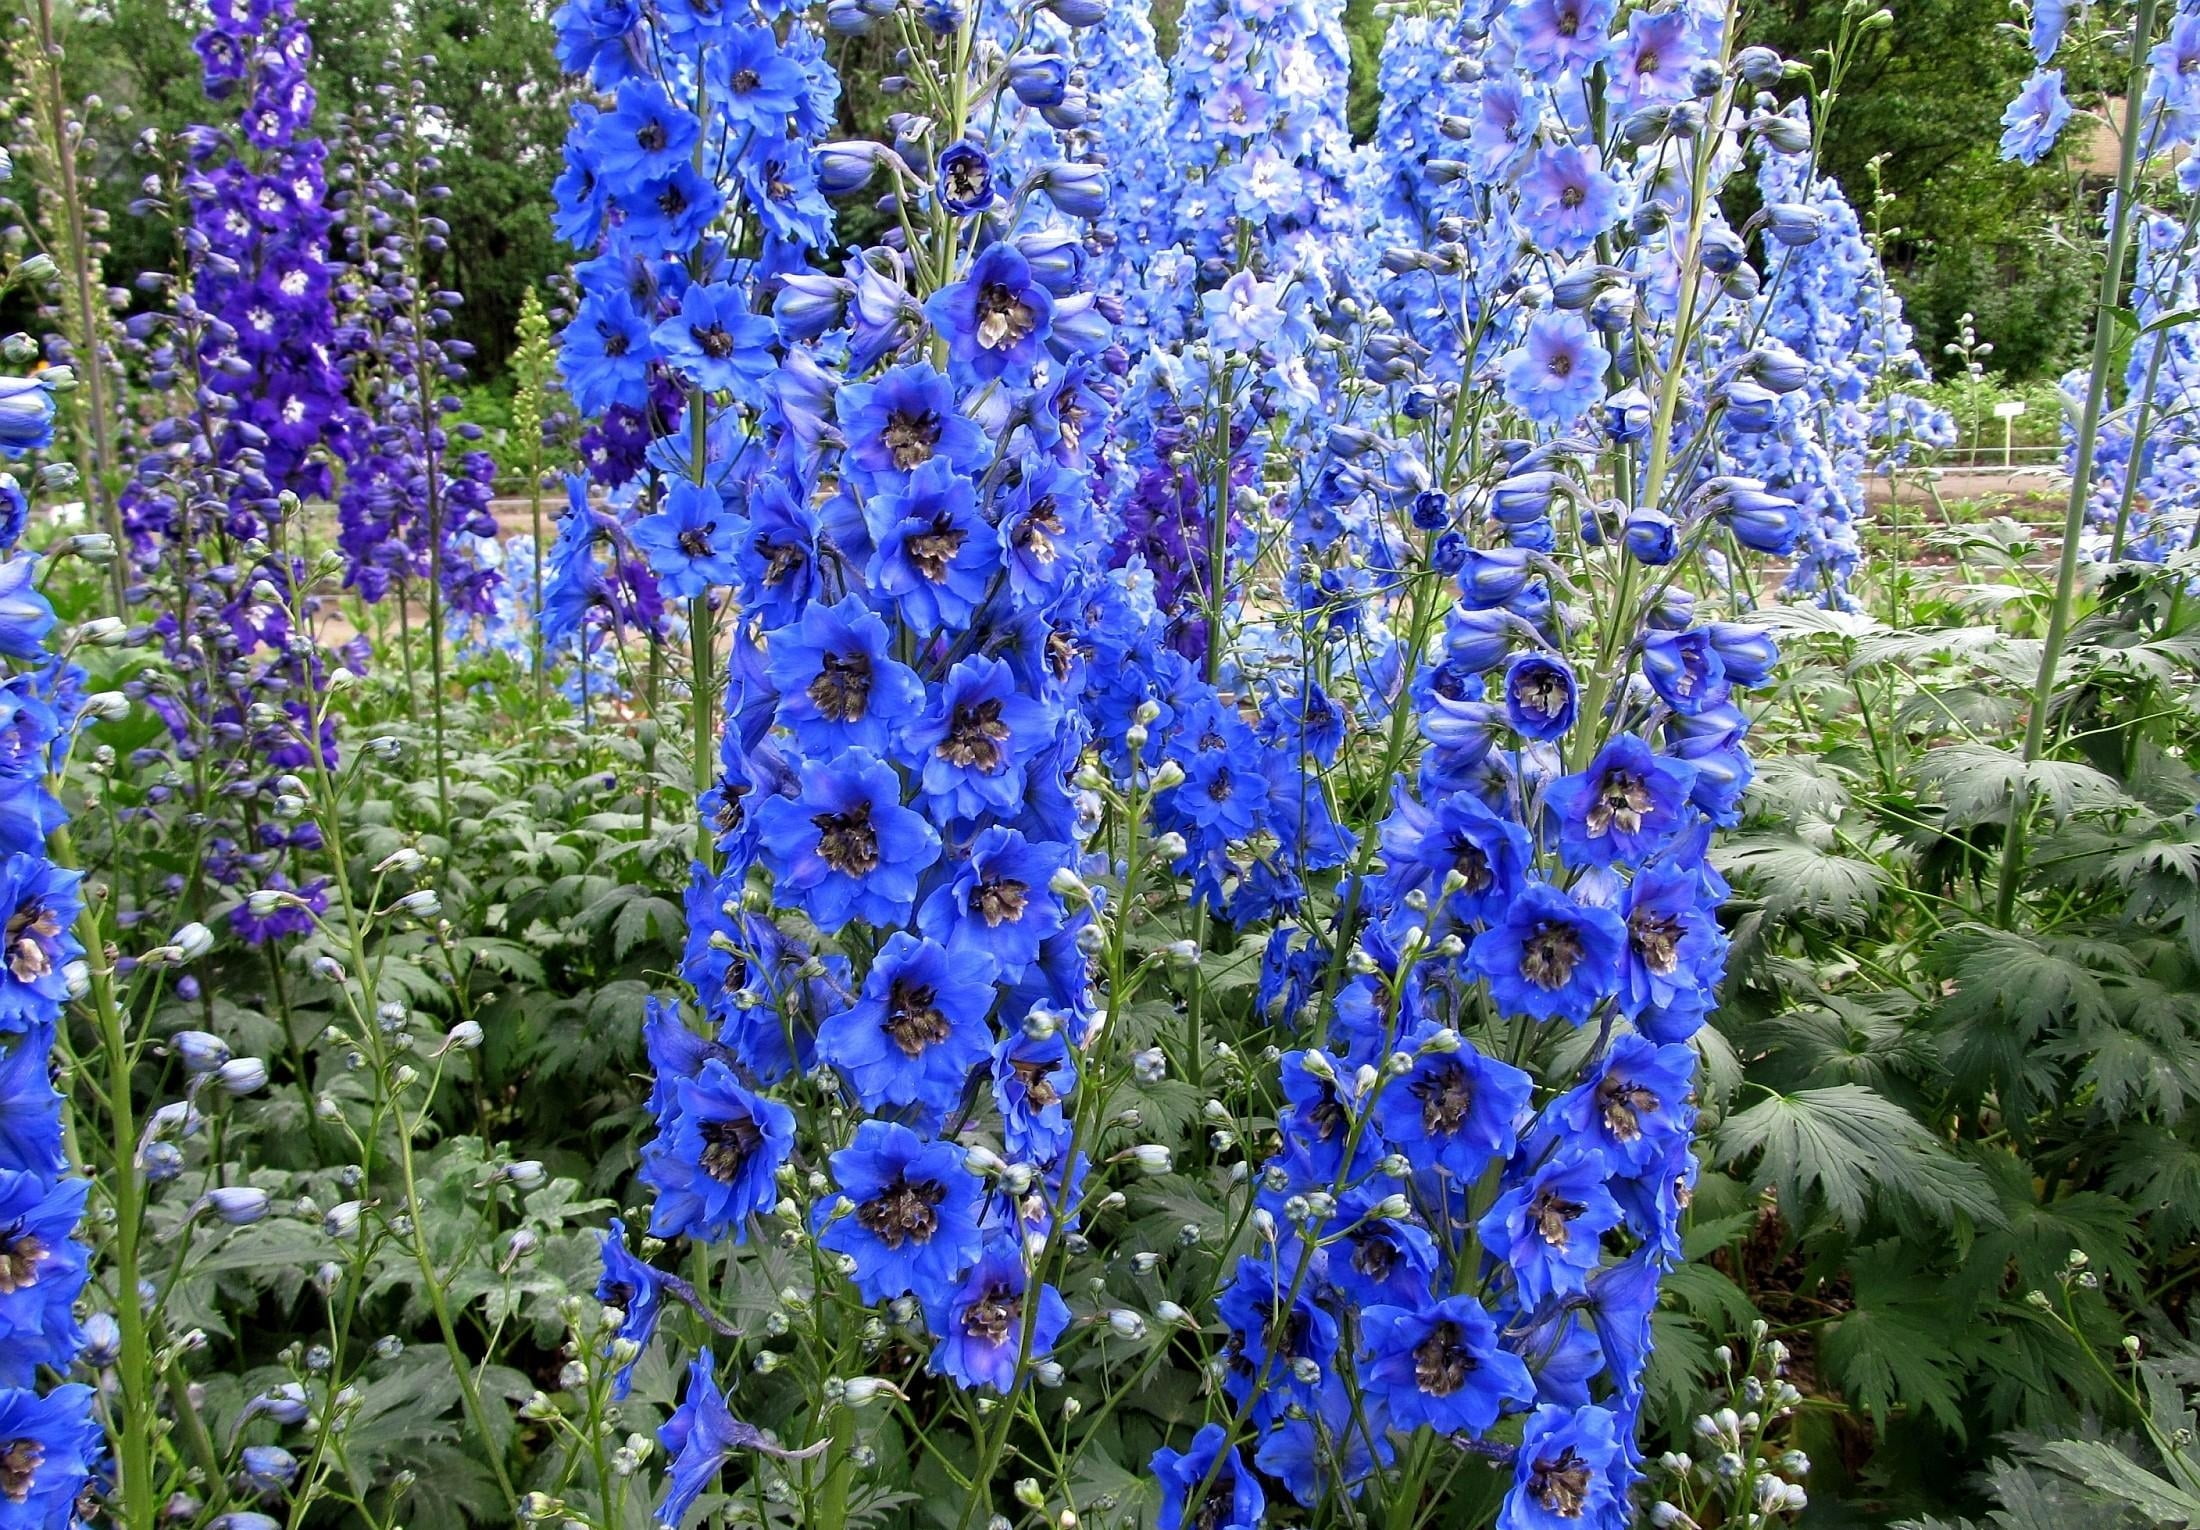 blue flowers near green plants